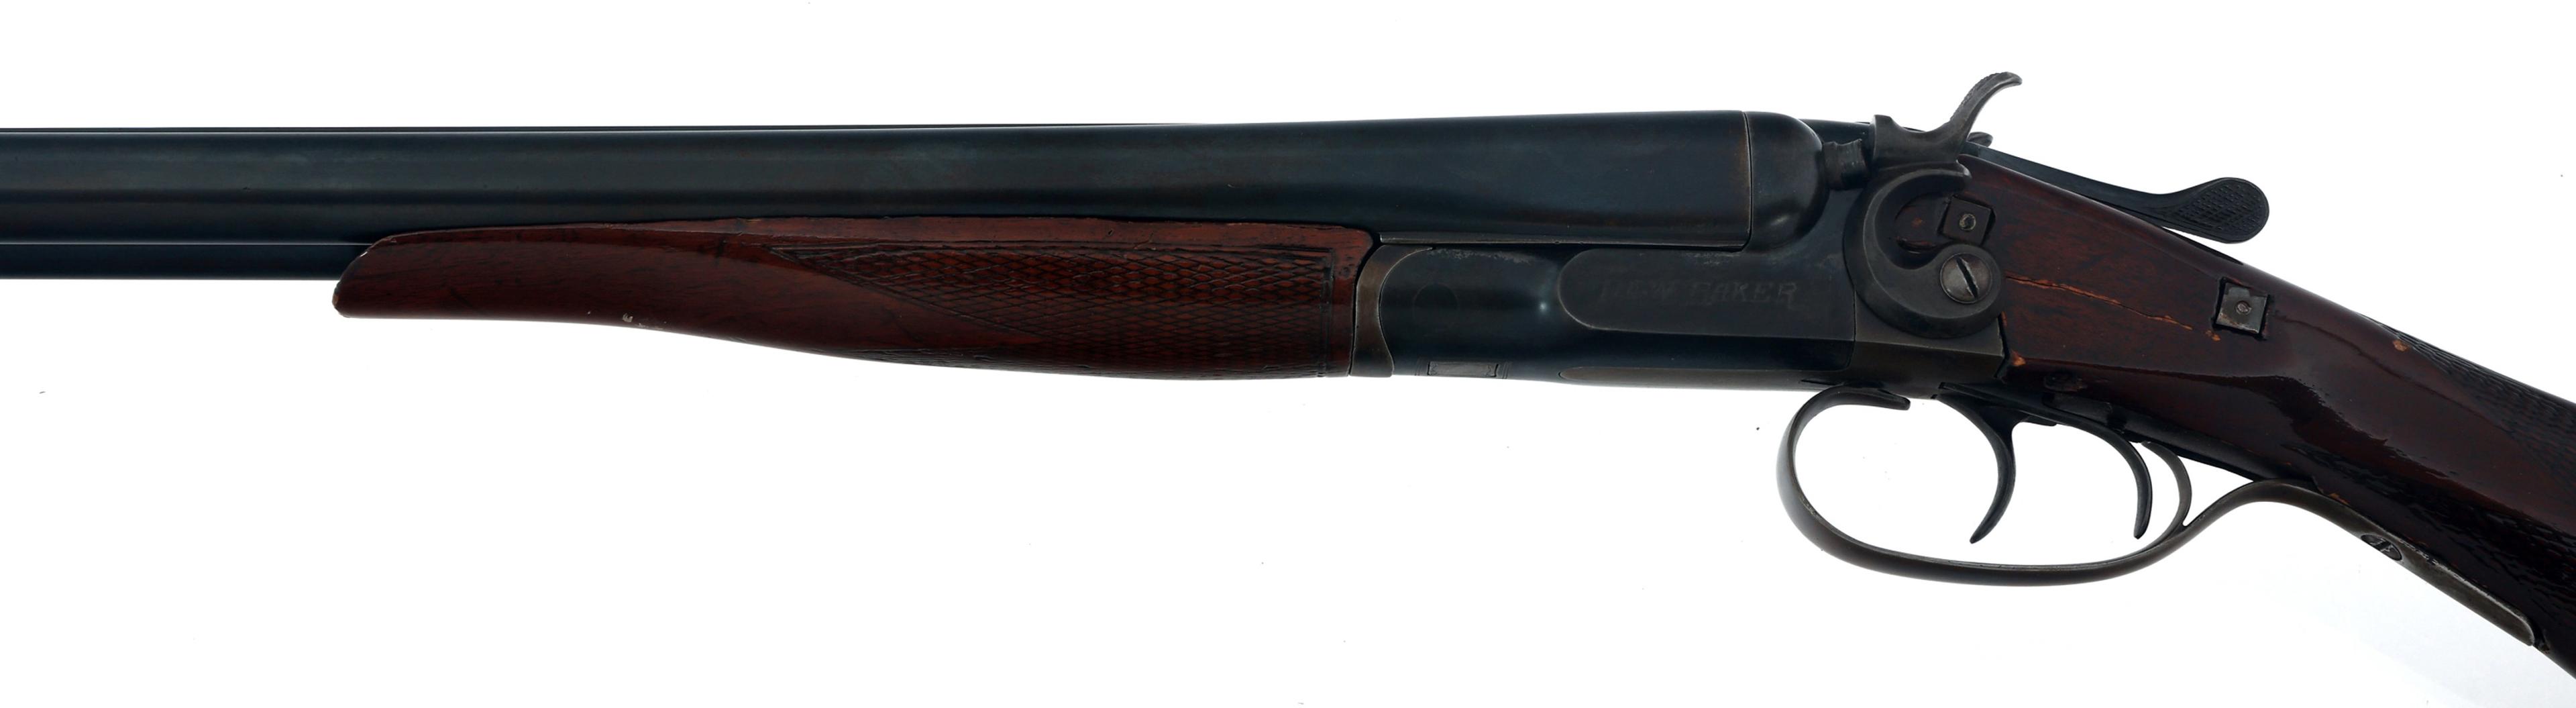 BAKER GUN CO. MODEL NEW BAKER 12 GA SHOTGUN